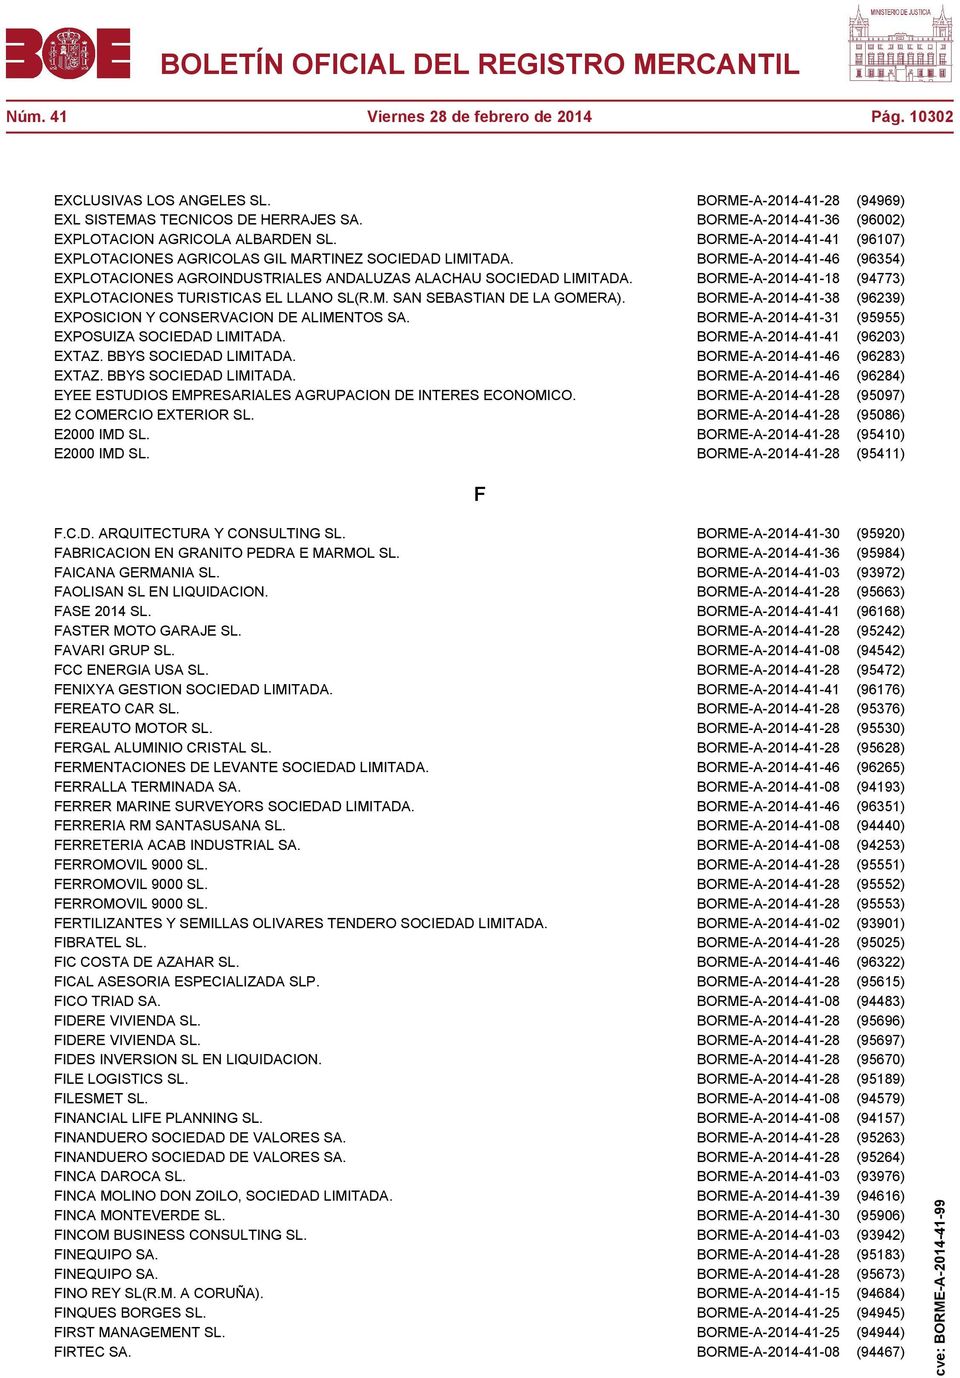 BORME-A-2014-41-46 (96354) EXPLOTACIONES AGROINDUSTRIALES ANDALUZAS ALACHAU SOCIEDAD LIMITADA. BORME-A-2014-41-18 (94773) EXPLOTACIONES TURISTICAS EL LLANO SL(R.M. SAN SEBASTIAN DE LA GOMERA).